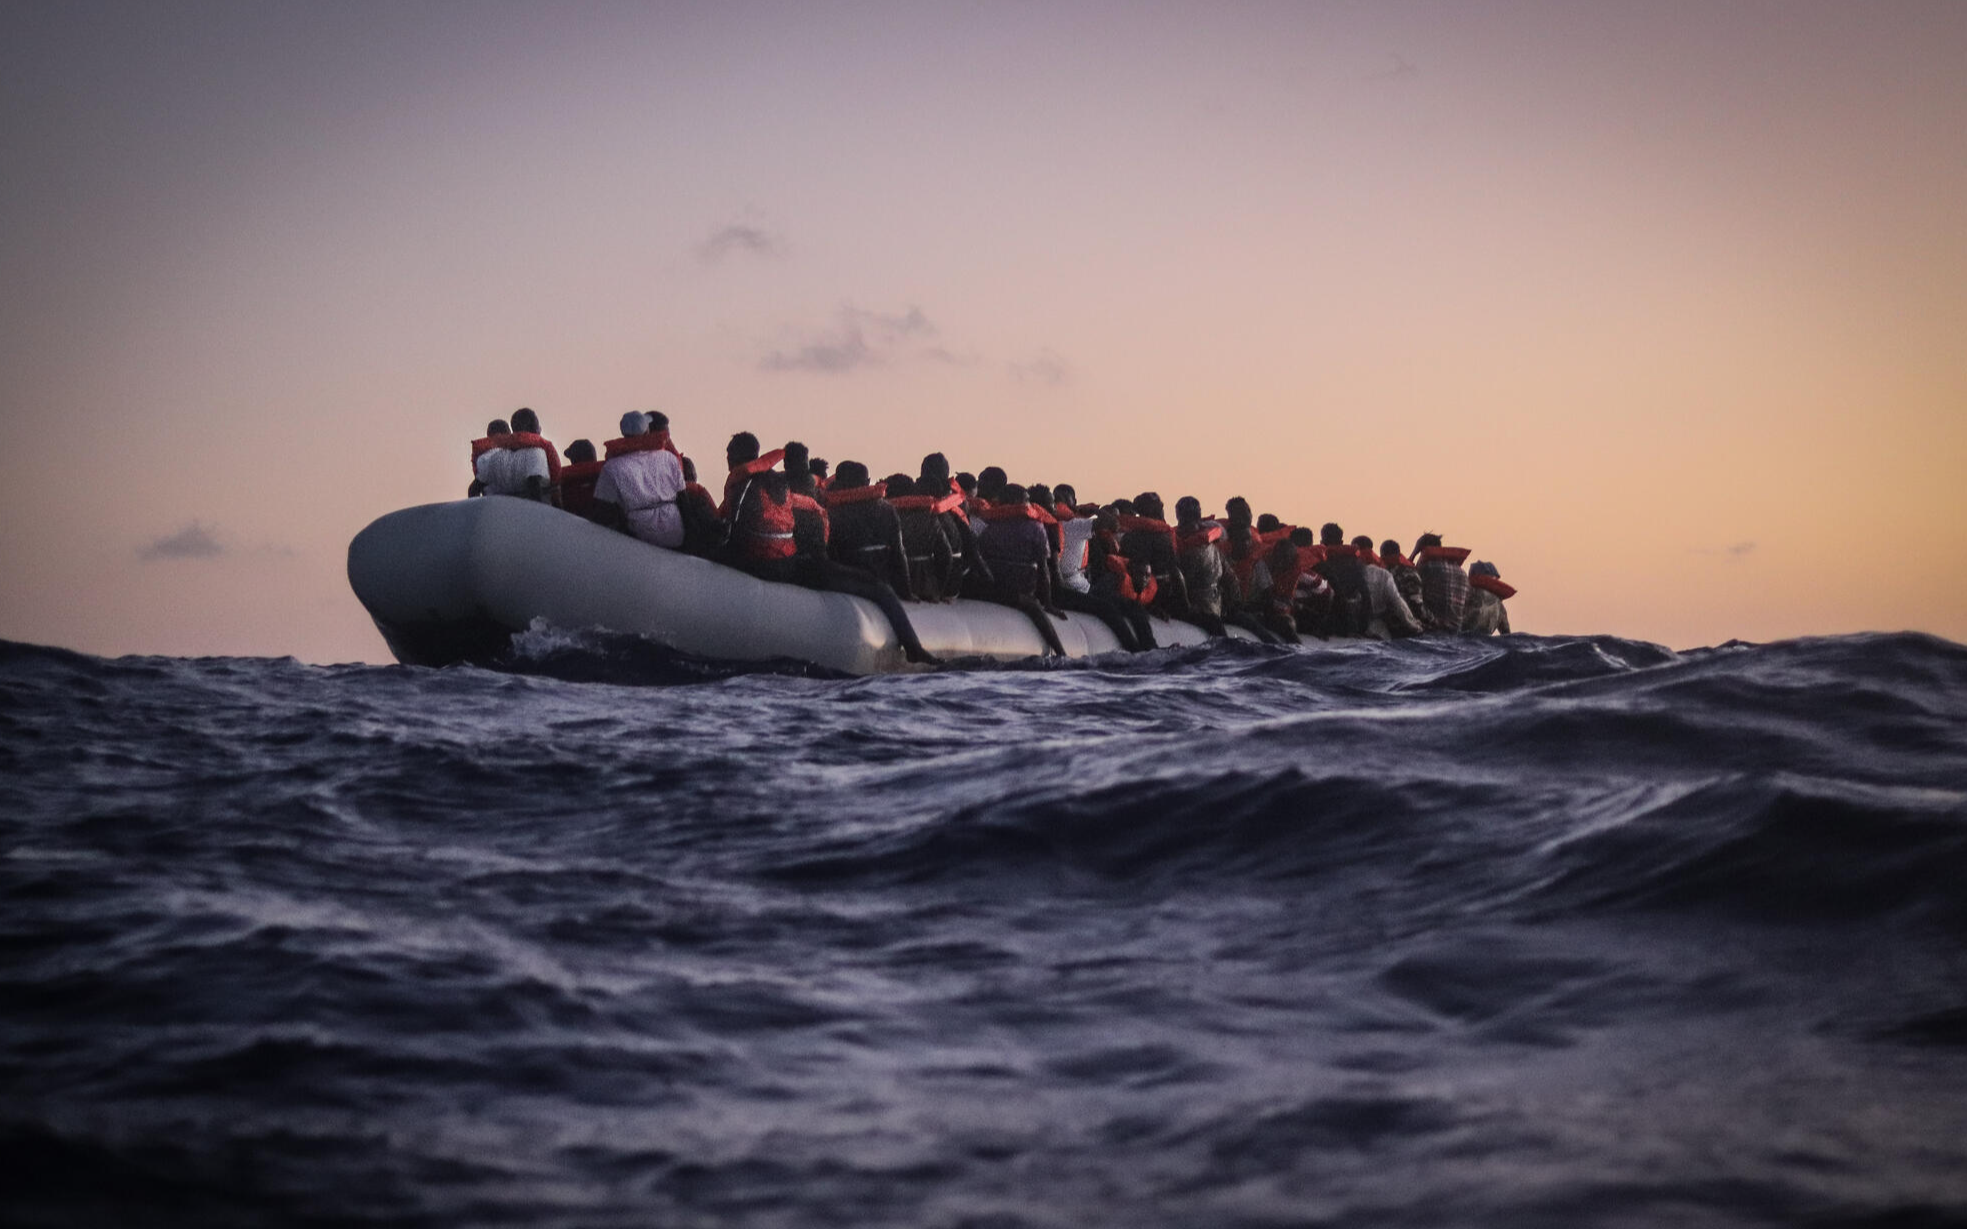 Göçmen botu battı: 3 ölü, 12 kayıp